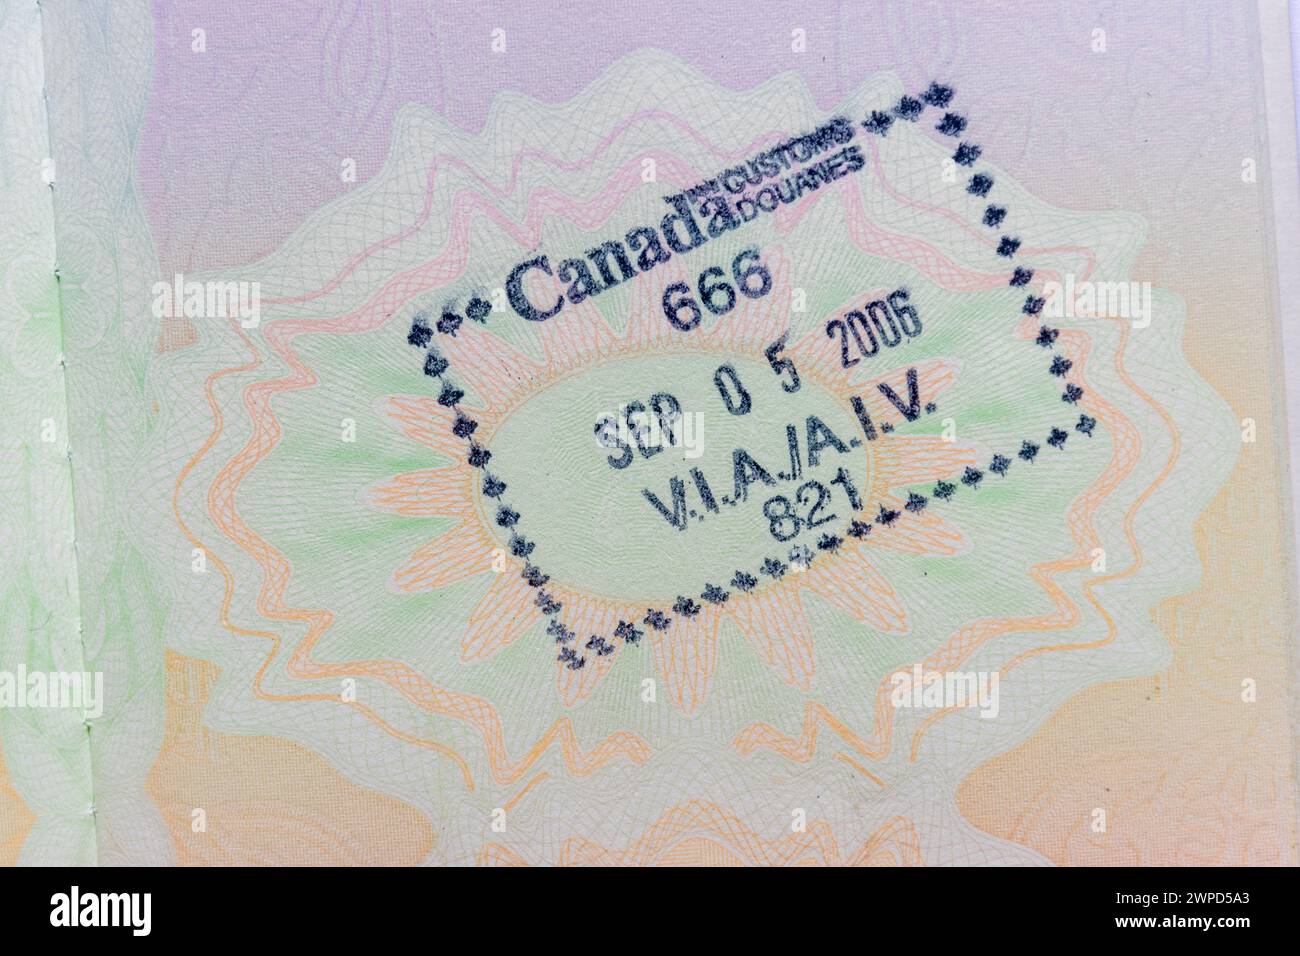 Canada stamp in British passport Stock Photo